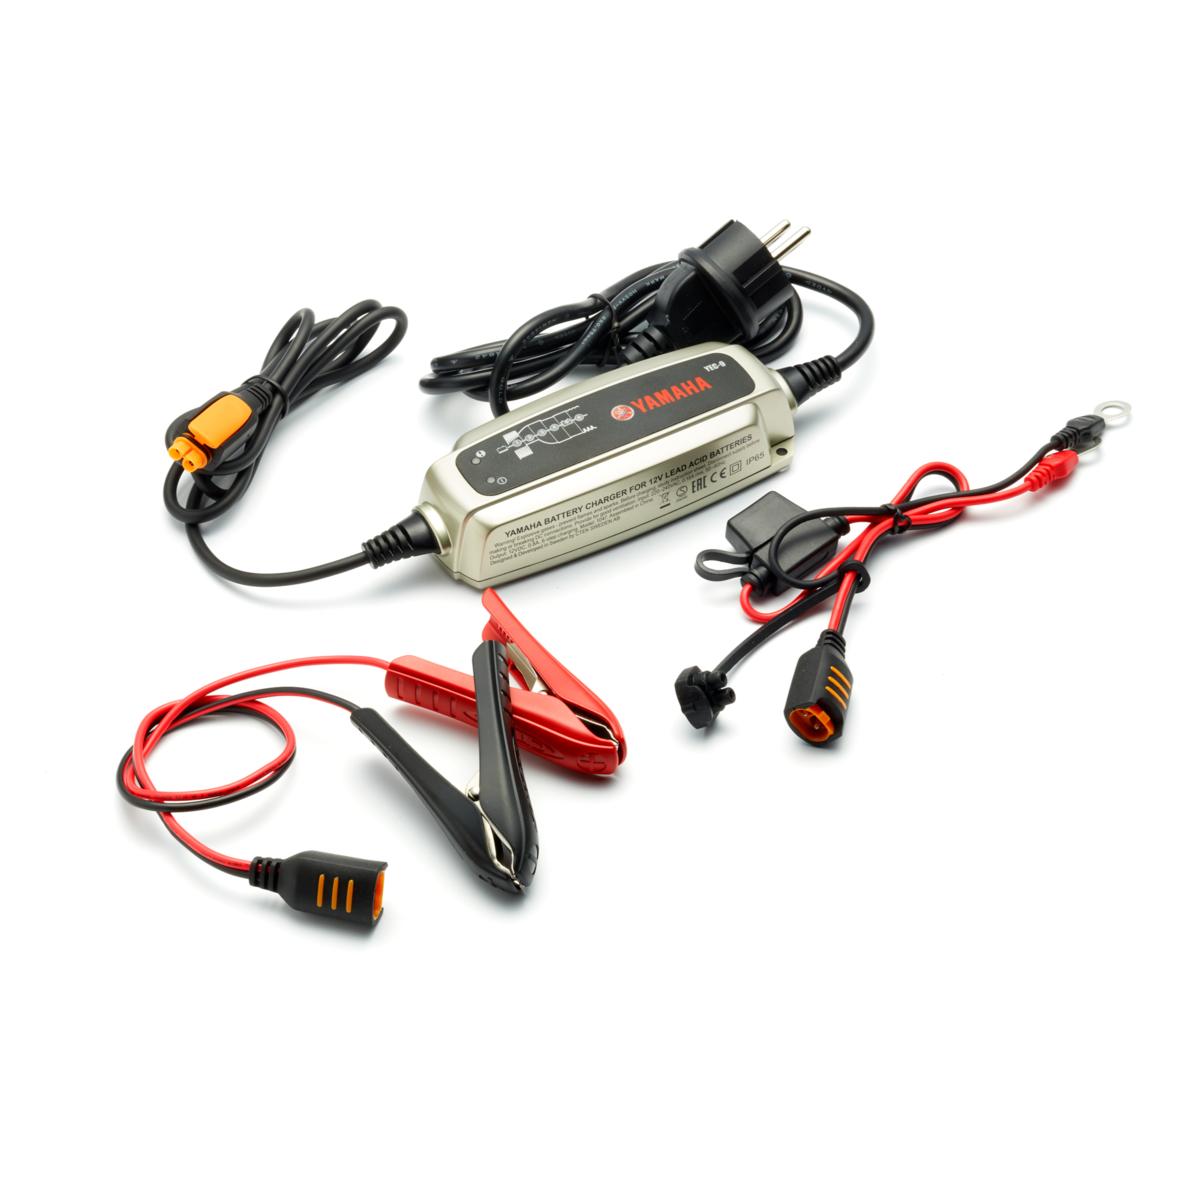 Caricabatterie a 6 fasi in grado di caricare la batteria di motociclette, scooter, ATV, SMB e/o prodotti nautici Yamaha.